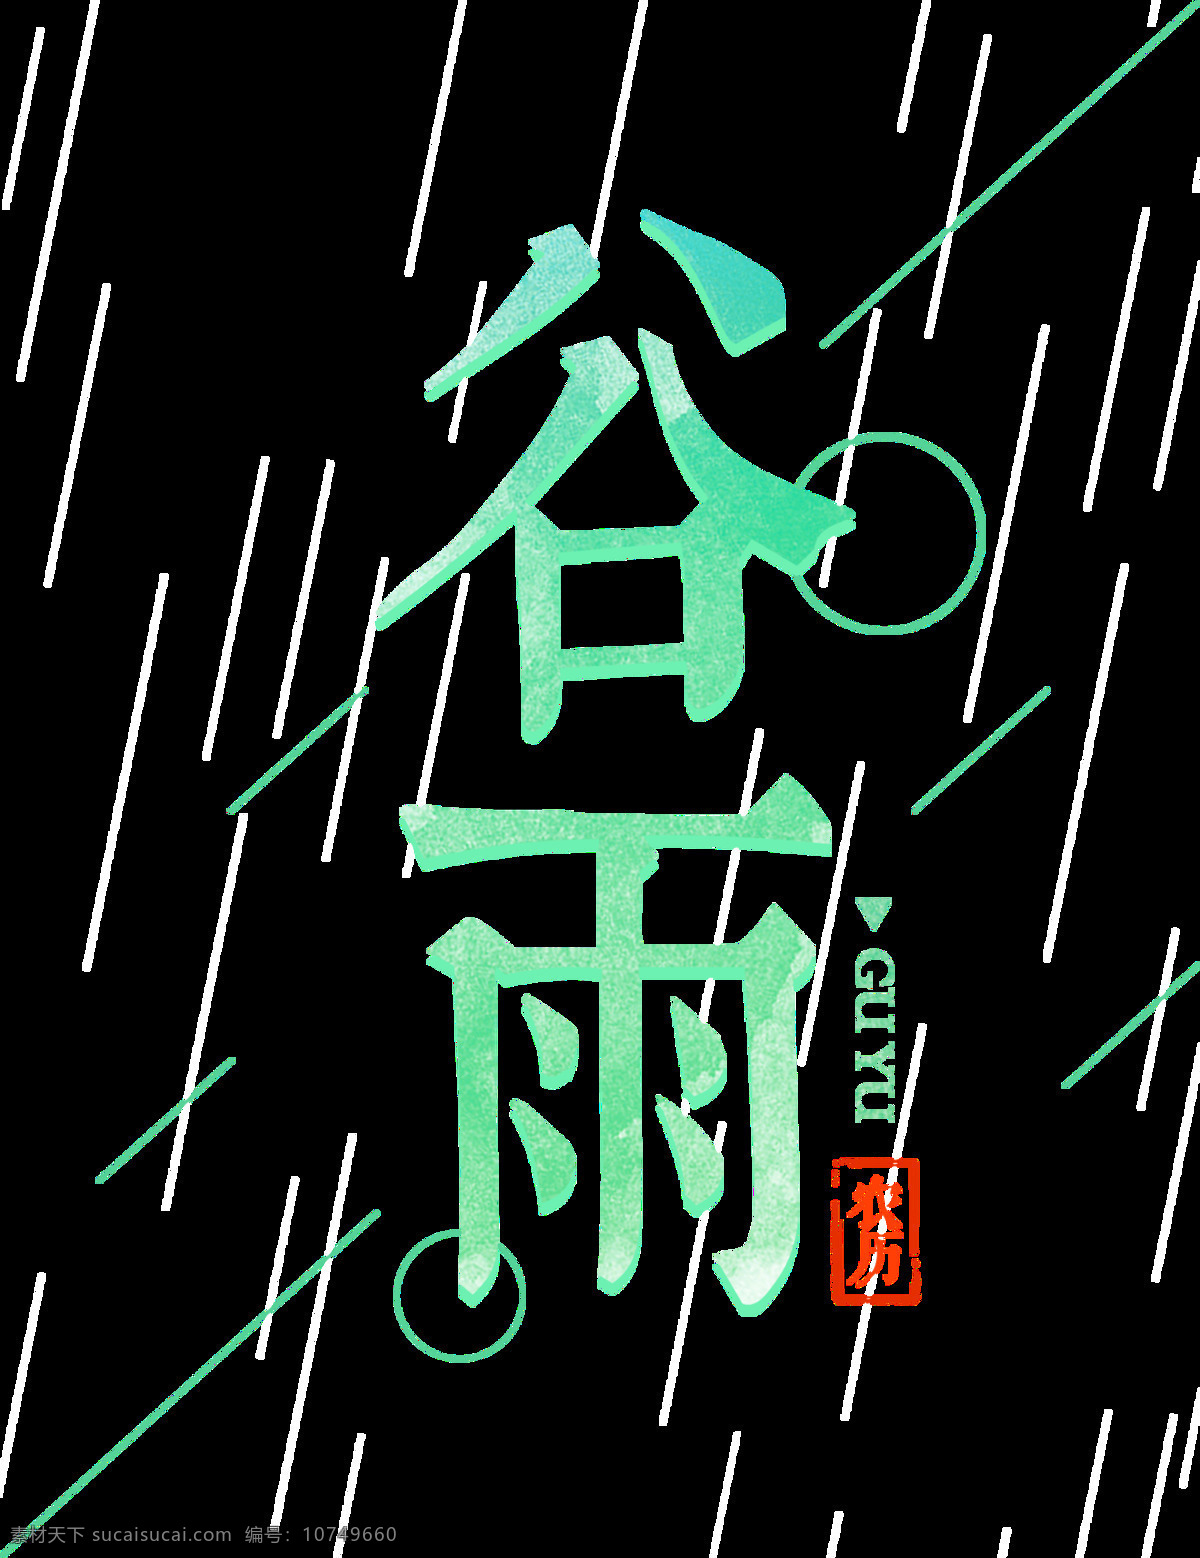 薄荷 蓝 谷雨 艺术 字体 艺术字体 红色字体 圆圈 斜线 二十四节气 薄荷蓝 雨季